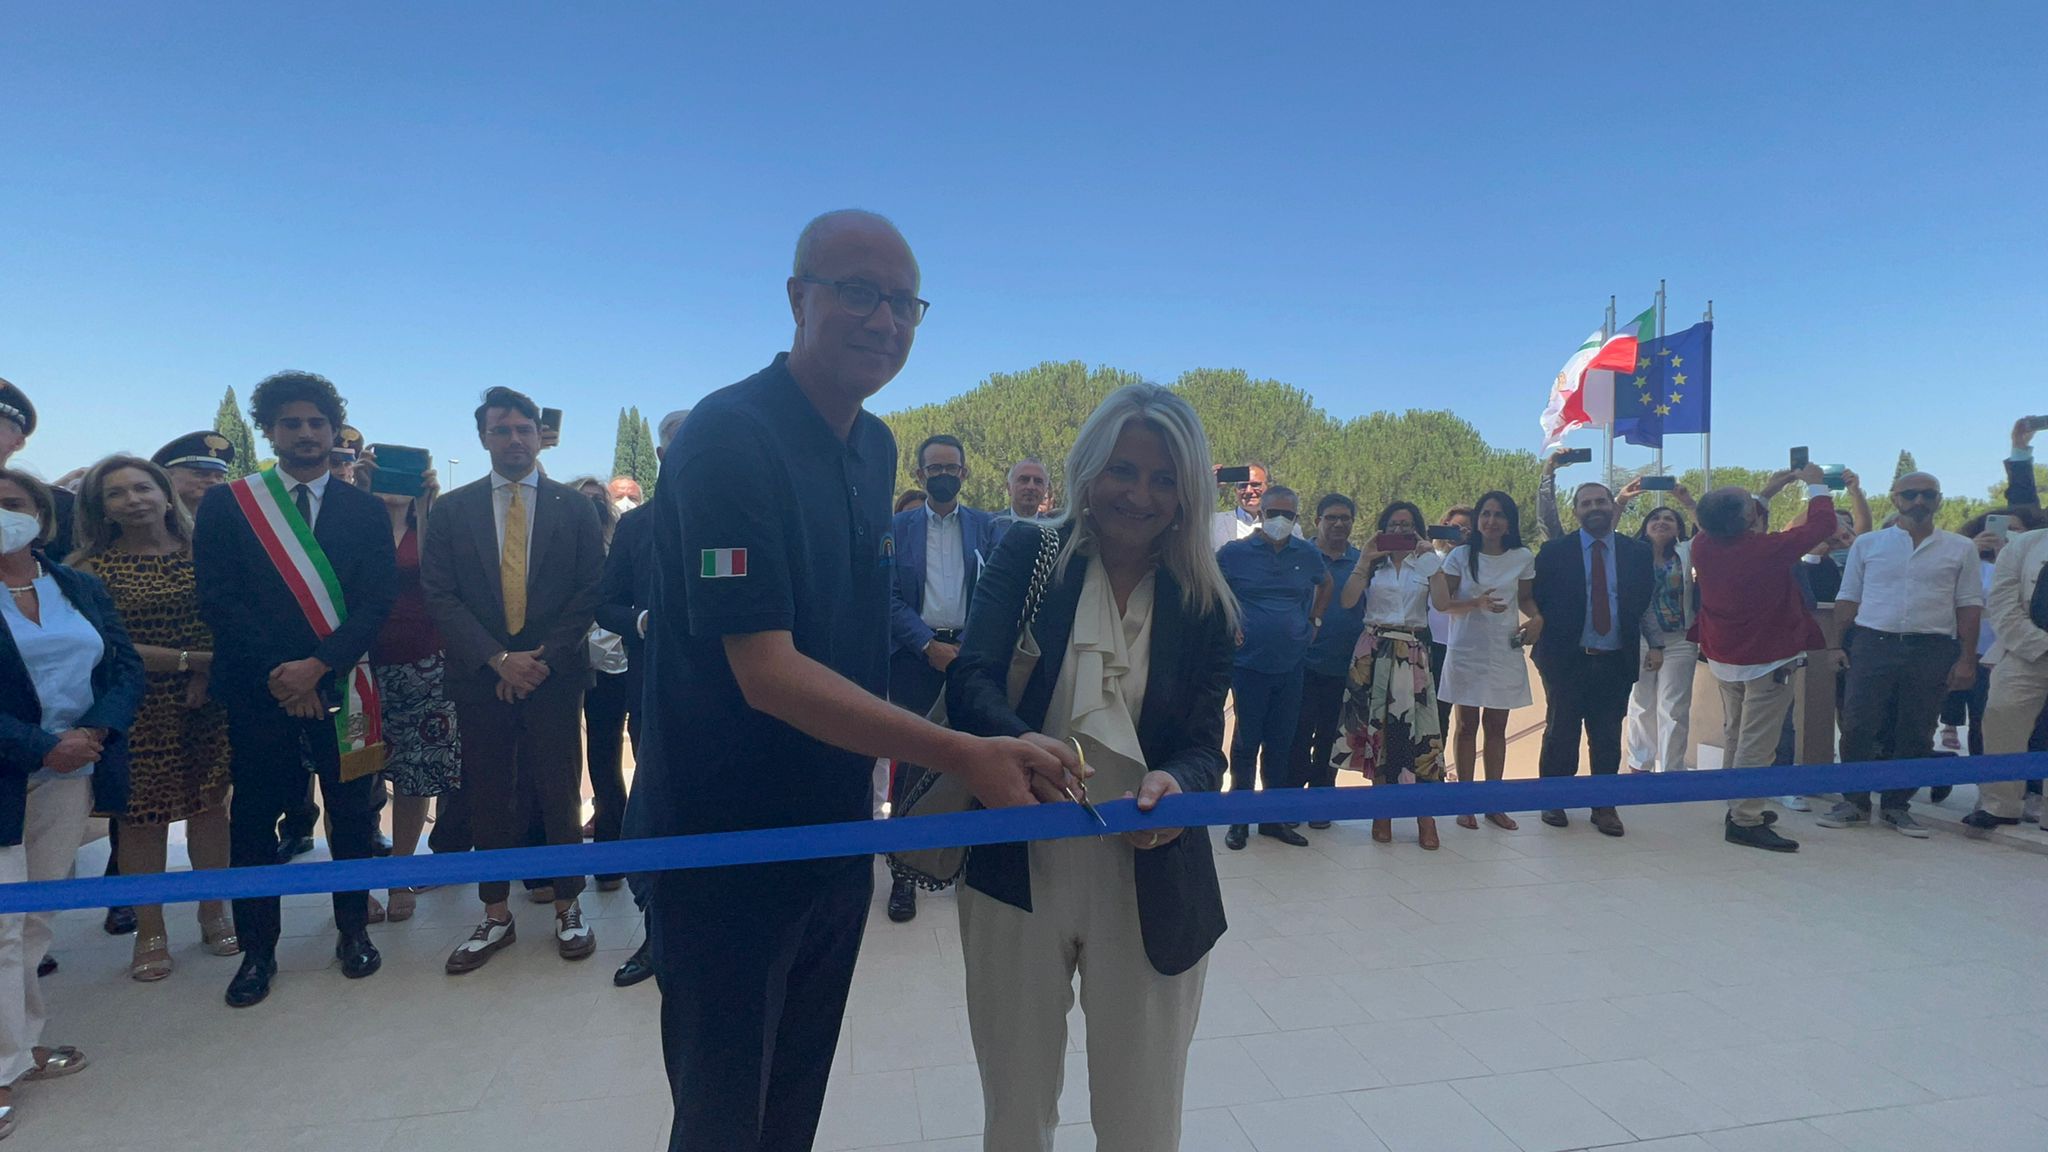 Galleria Inaugurata la nuova sede del Dipartimento provinciale di Bari di Arpa Puglia nel Parco Scientifico e tecnologico di Tecnopolis a Valenzano (Ba) - Diapositiva 6 di 9